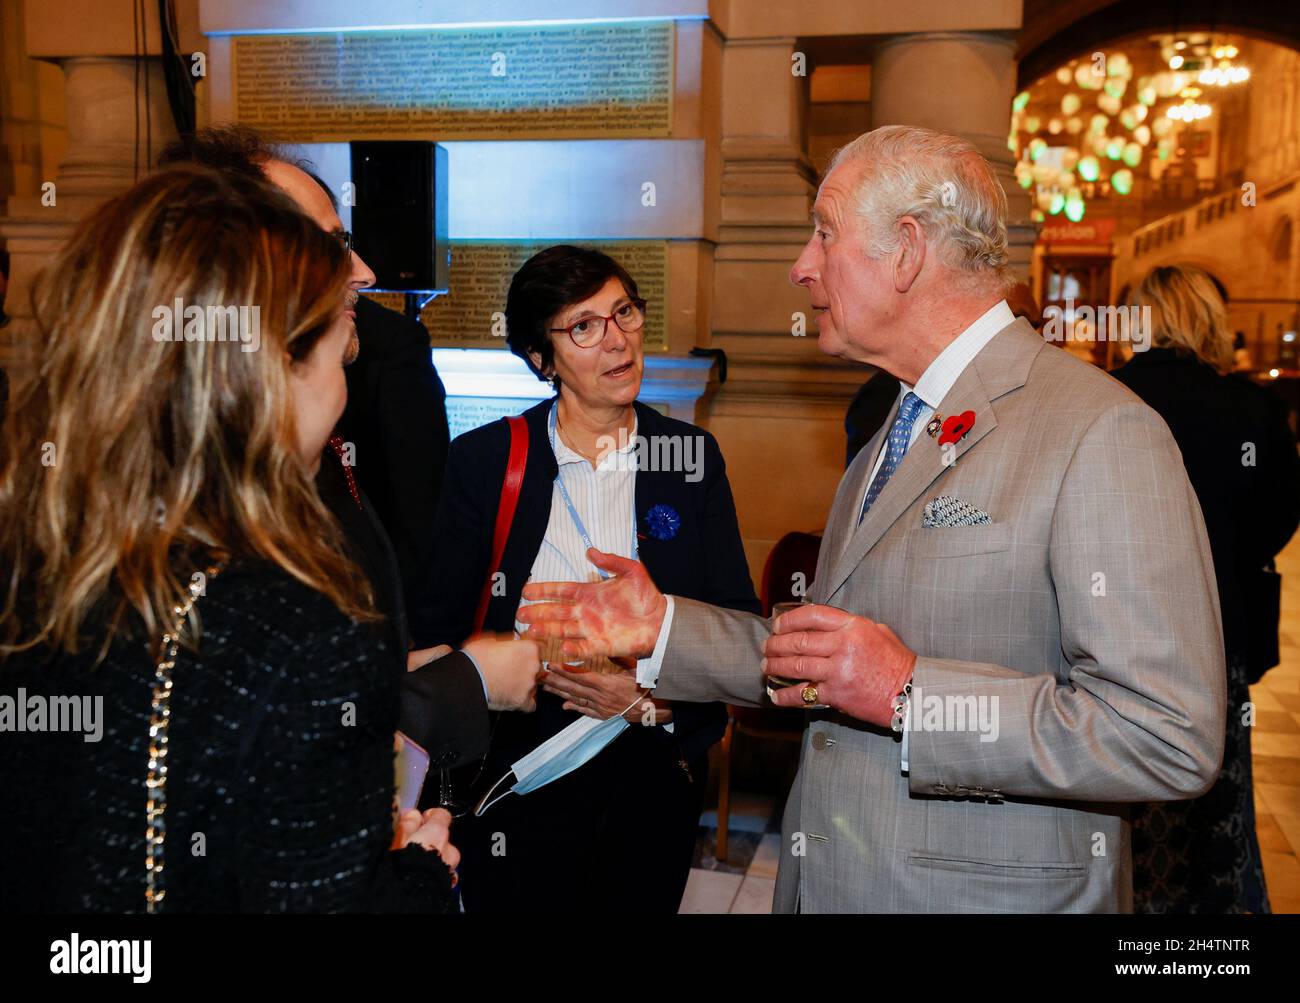 Der Prinz von Wales trifft sich mit einem französischen Chefverhandler während eines Empfangs der Chefverhandler in Kelvingrove. Kelvingrove Art Gallery, Glasgow. Bilddatum: Donnerstag, 4. November 2021. Stockfoto